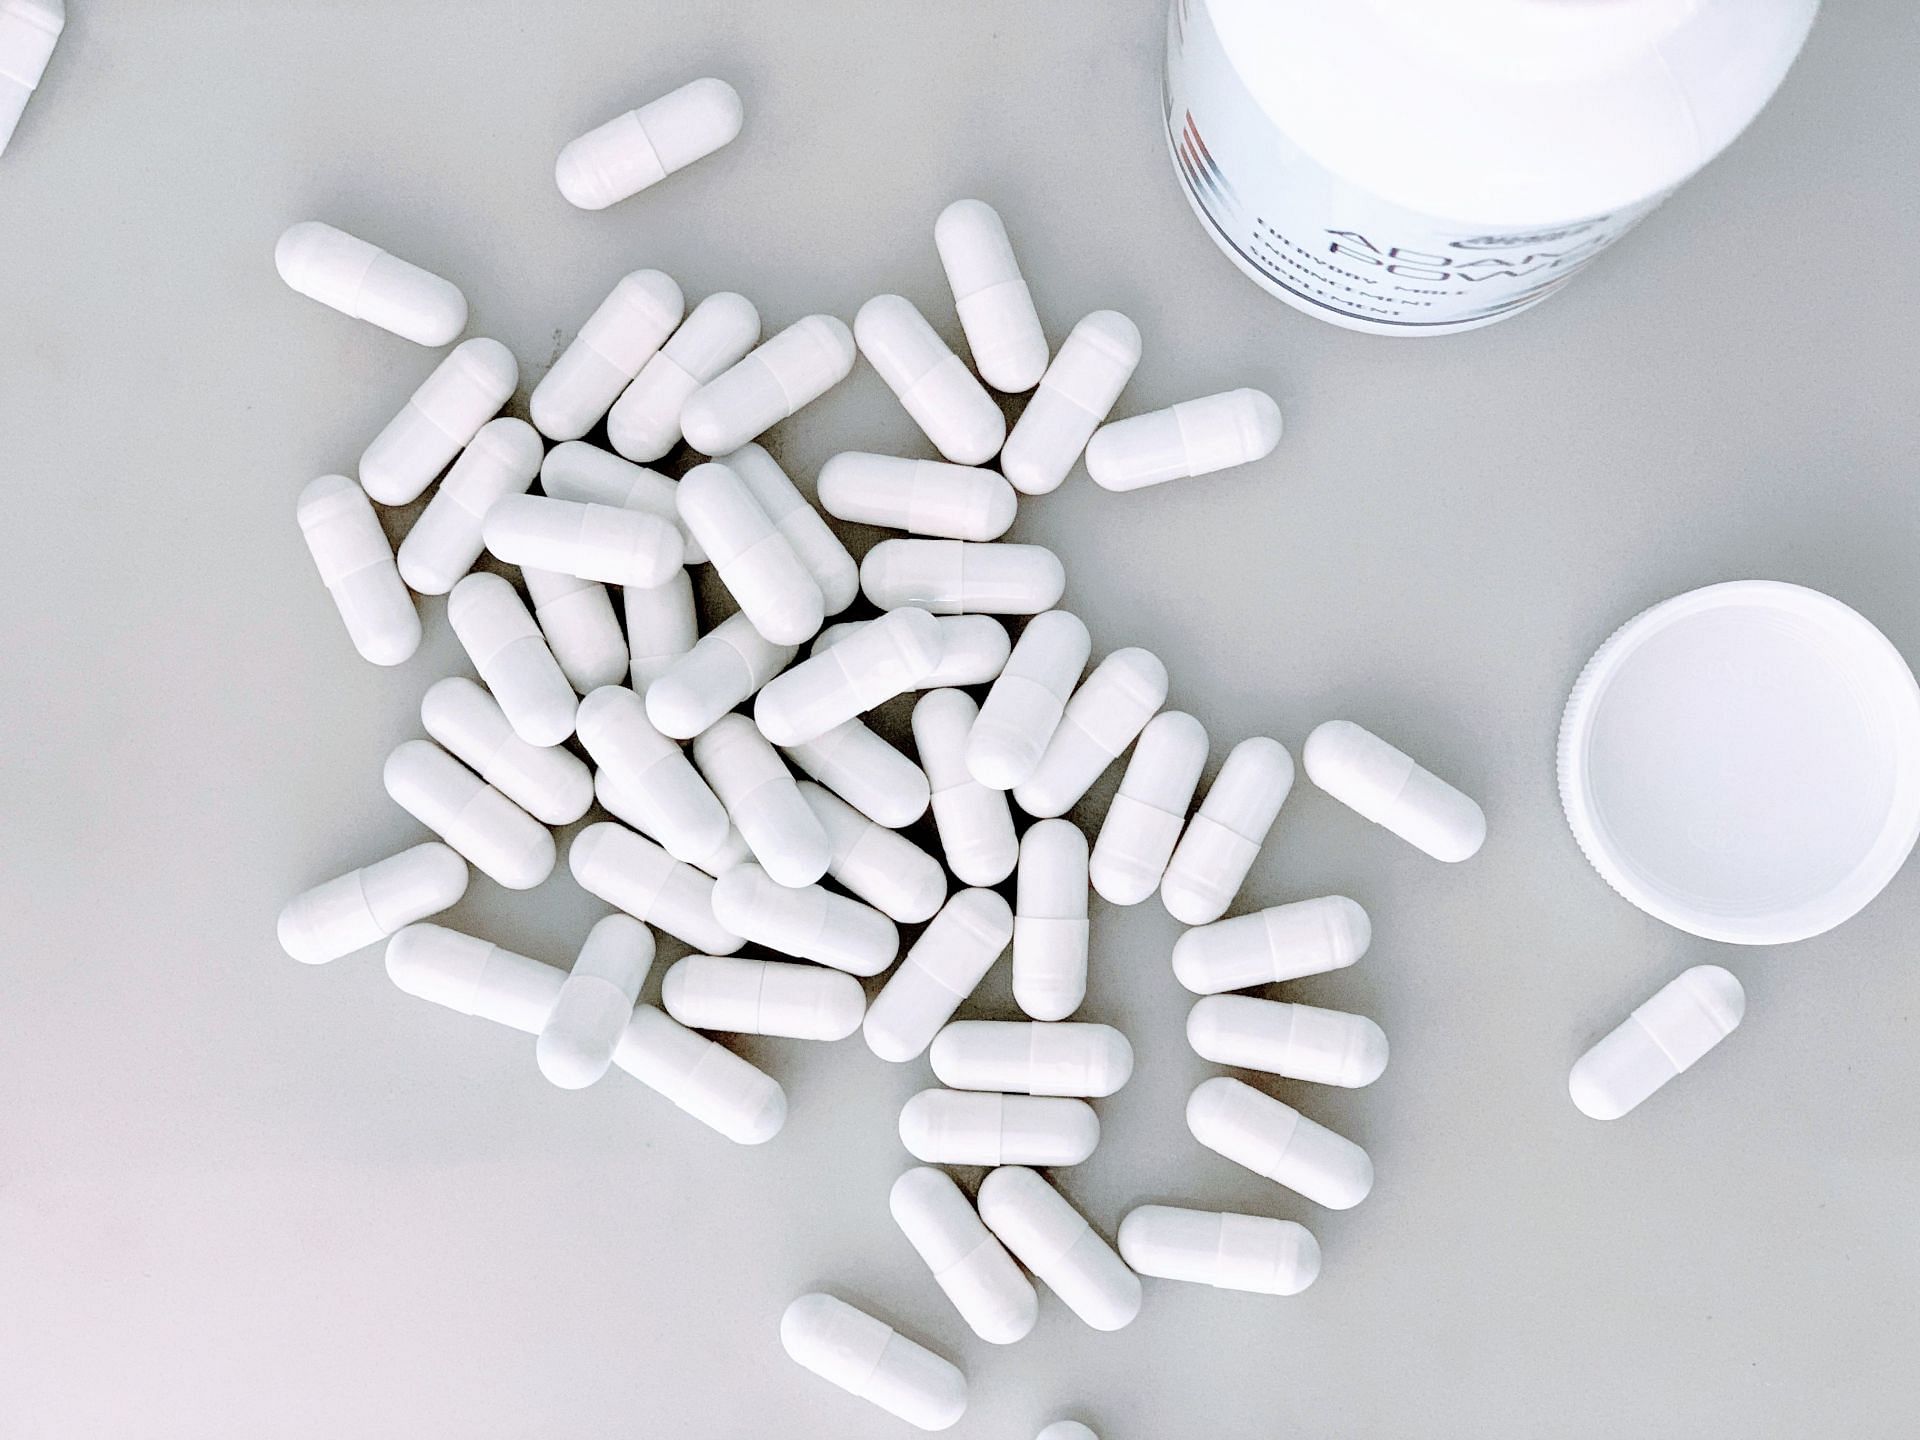 Melatonin supplements are used to induce sleep. (Image via Unsplash/The-Lore)